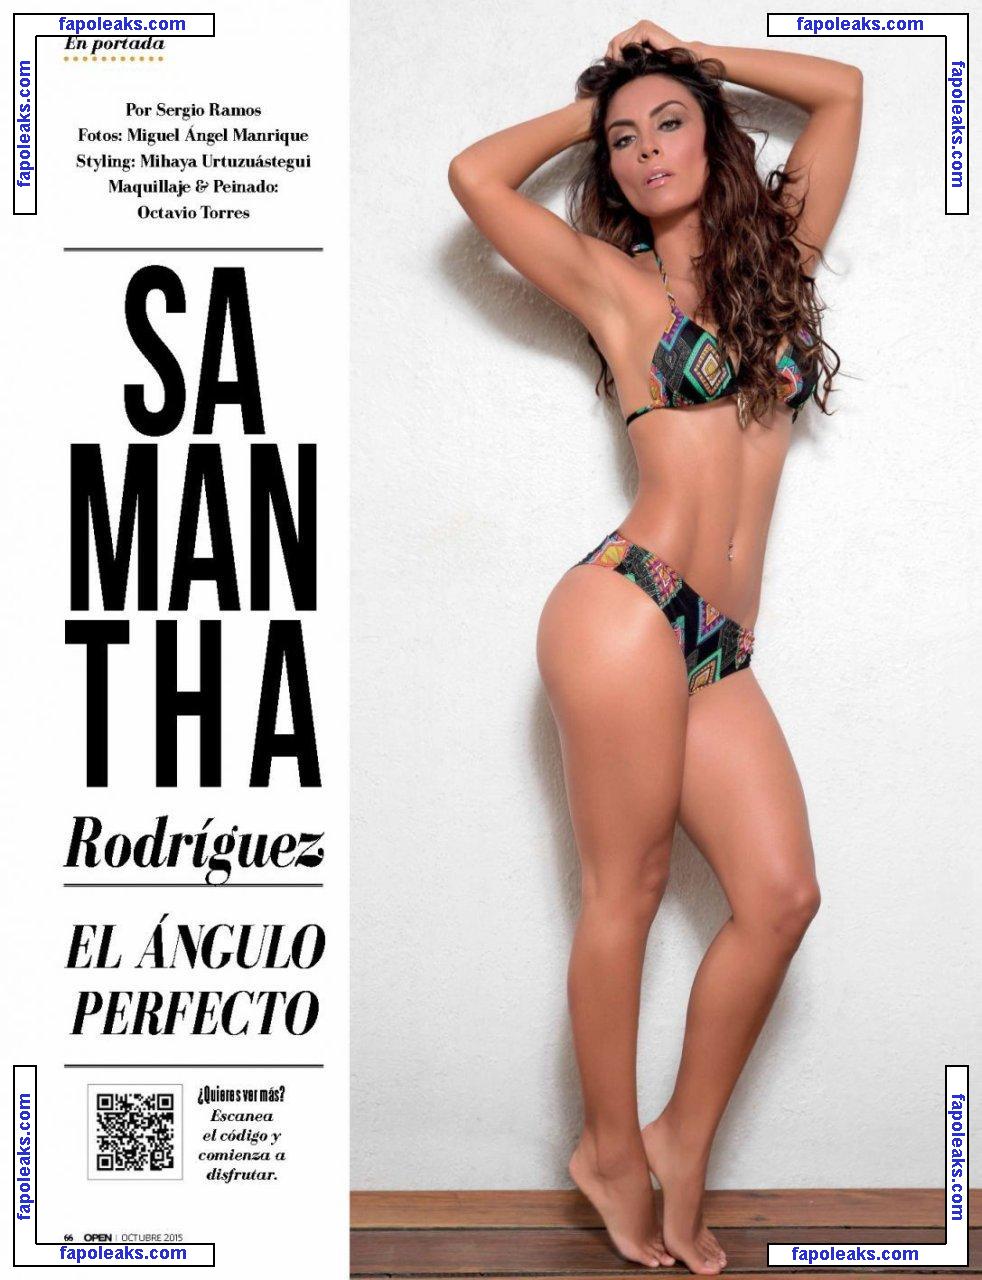 Samantha Rodriguez / Smthrdza / sammrdza nude photo #0045 from OnlyFans